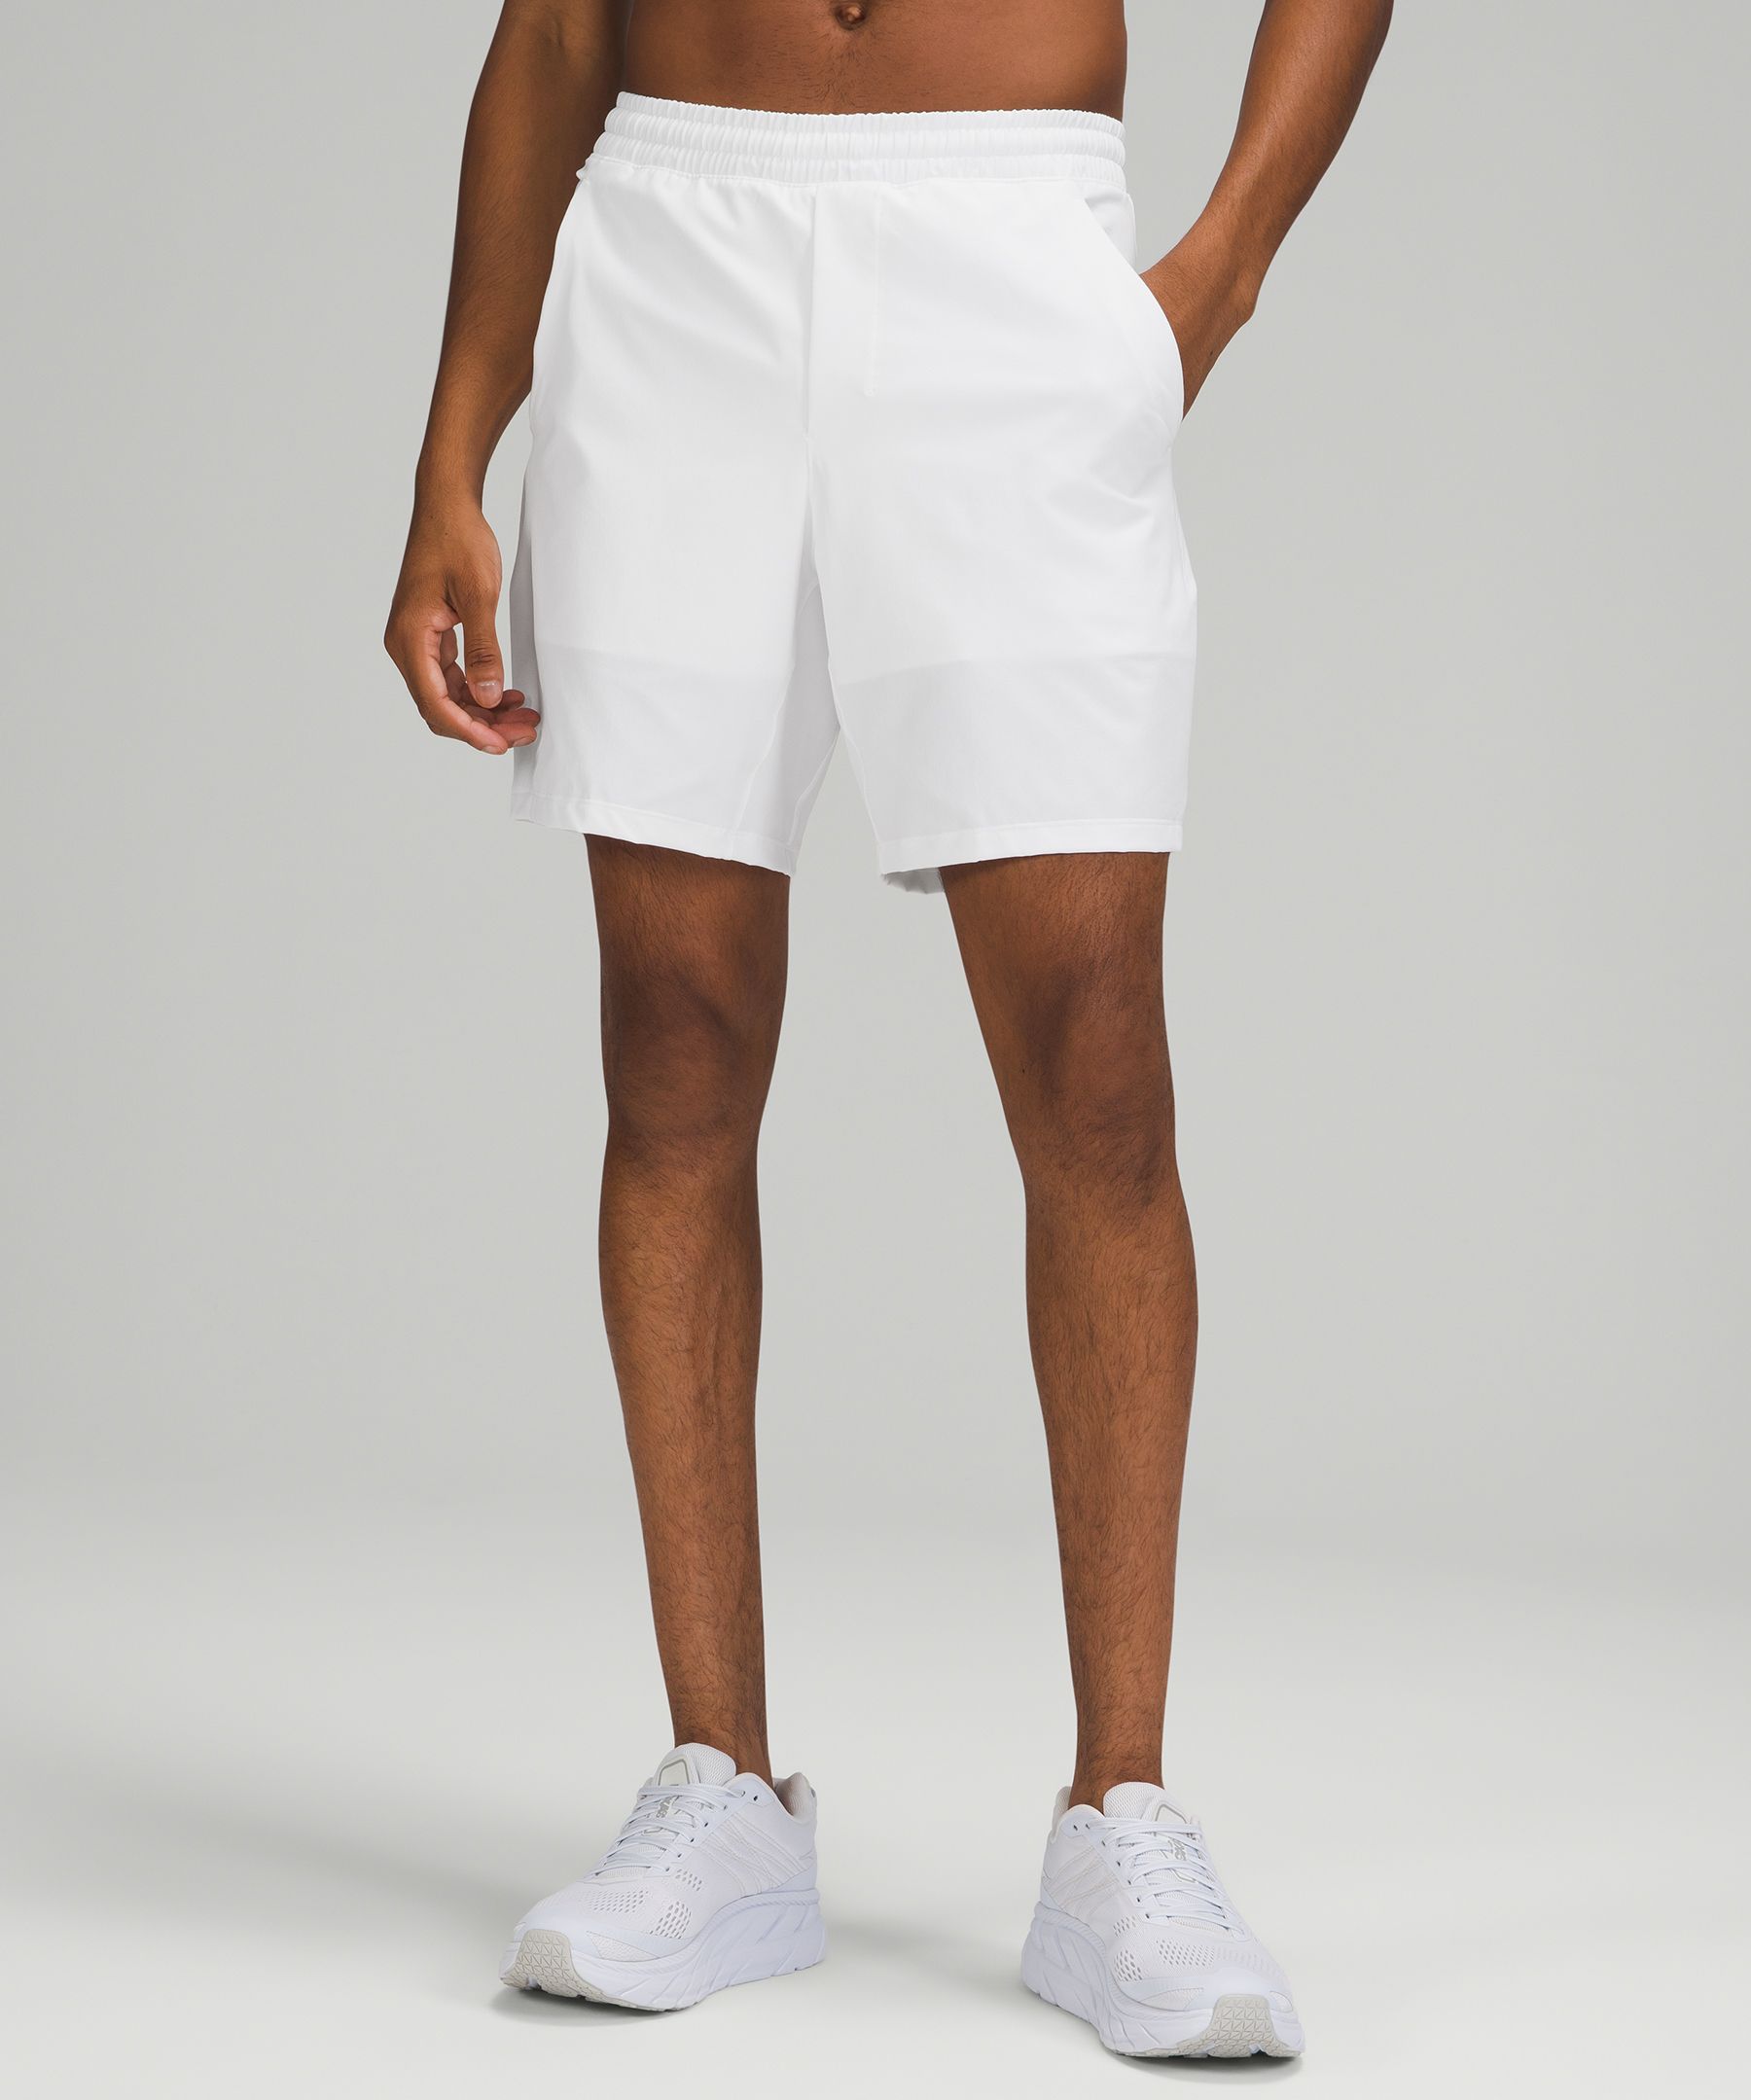 white lululemon shorts